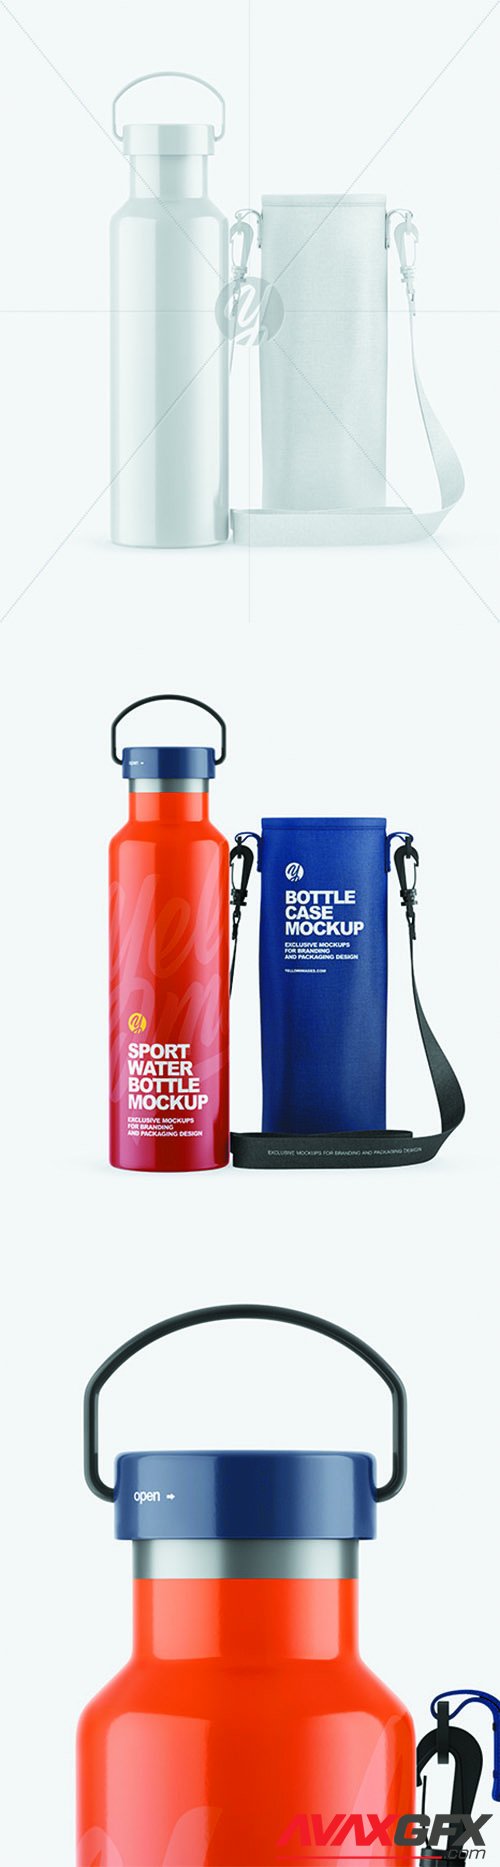 Glossy Water Bottle W/ Case Mockup 68888